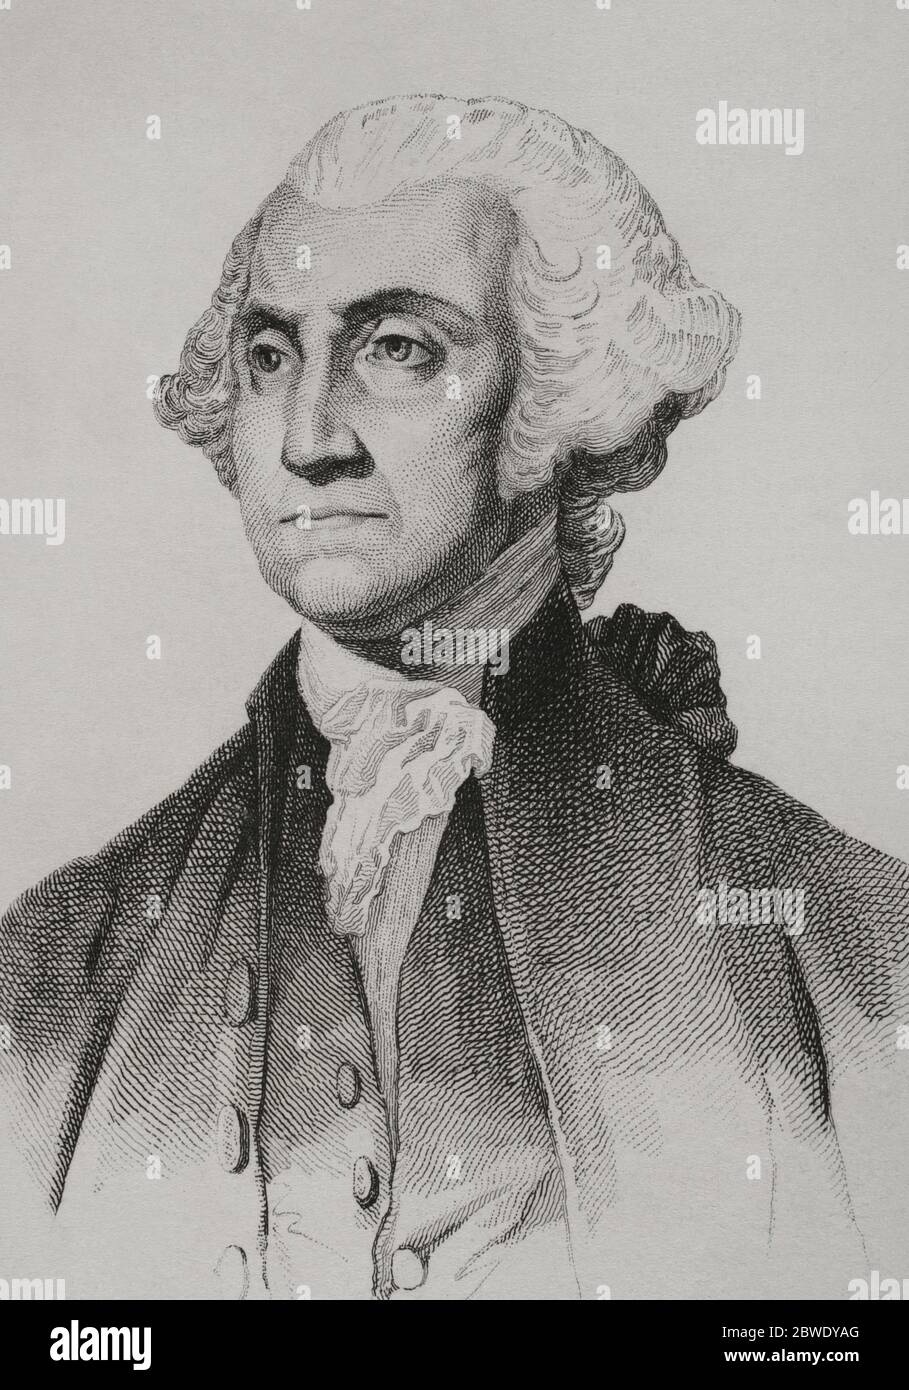 George Washington (1732-1799). Primer presidente de los Estados Unidos  entre 1789-1797. Comandante en jefe del Ejército Continental revolucionario  en la Guerra de la Independencia de los Estados Unidos (1775-1783). Grabado  por Lemaitre,